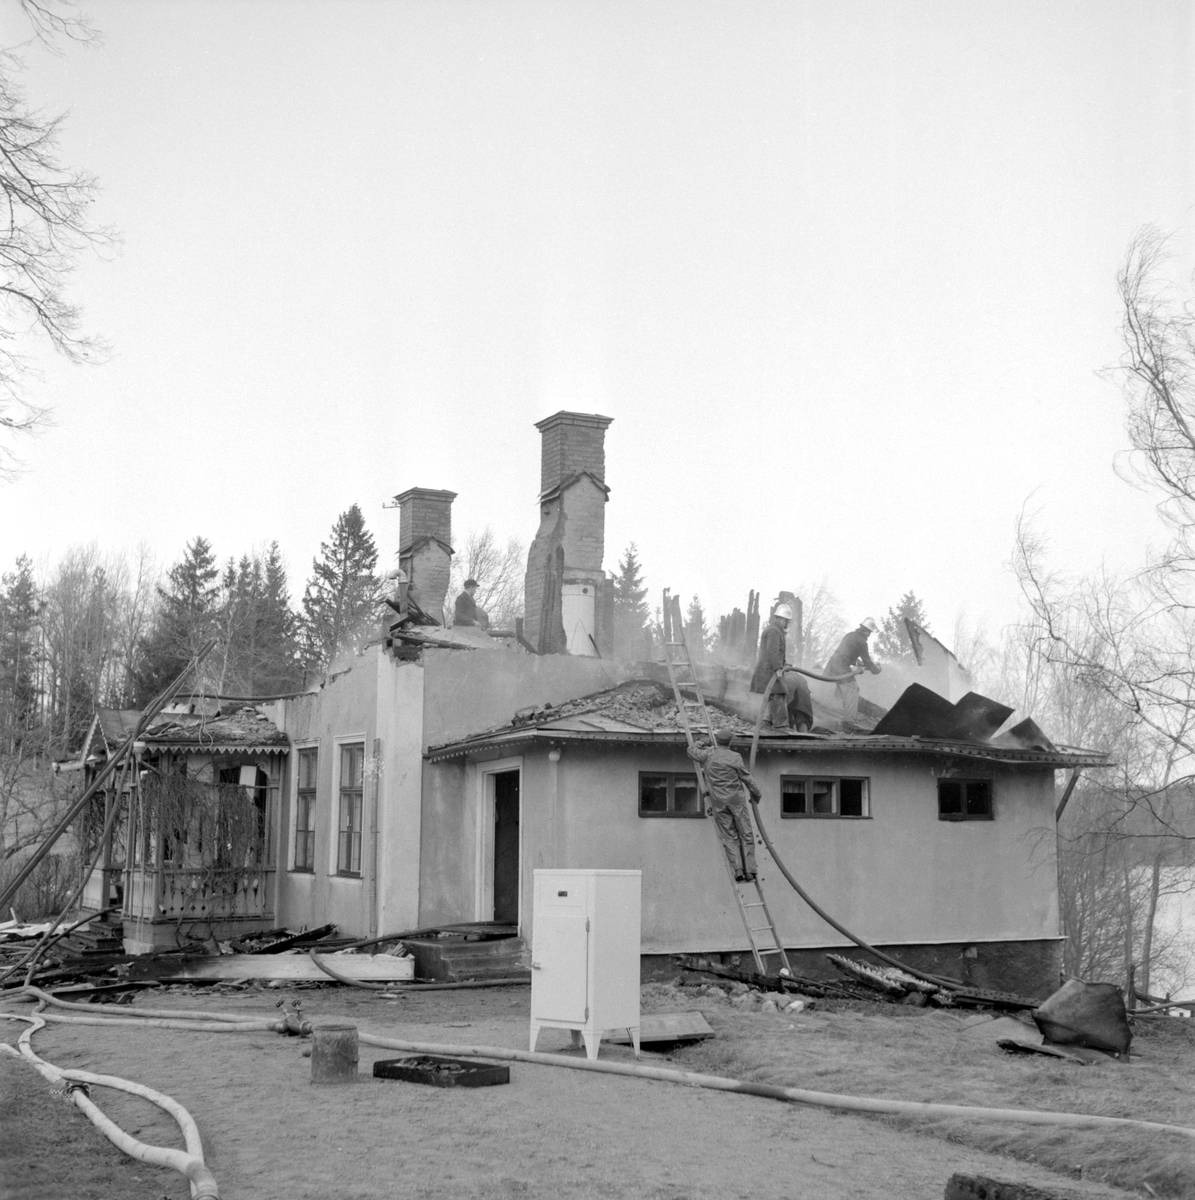 När det blåste som mest på fredagsmorgonen den 12 november 1954, började det brinna i mangårdsbyggnaden på Sinnerstad i Bankekind, och det dröjde inte förrän huset var helt övertänt. Vid eldutbrottet var fru Gustafsson ensam i huset. Hon märkte i förstone inte utbrottet, då hon befann sig i nedervåningen och elden brutit lös i övervåningen. Det var istället maken Hugo Gustafsson och vid gården anställda Seth Johansson som varseblev att rök trängde upp mellan tegelpannorna. Bankekinds- och Hjulsbro brandkårer anlände klockan 12.15 men de kunde inte rädda huset.